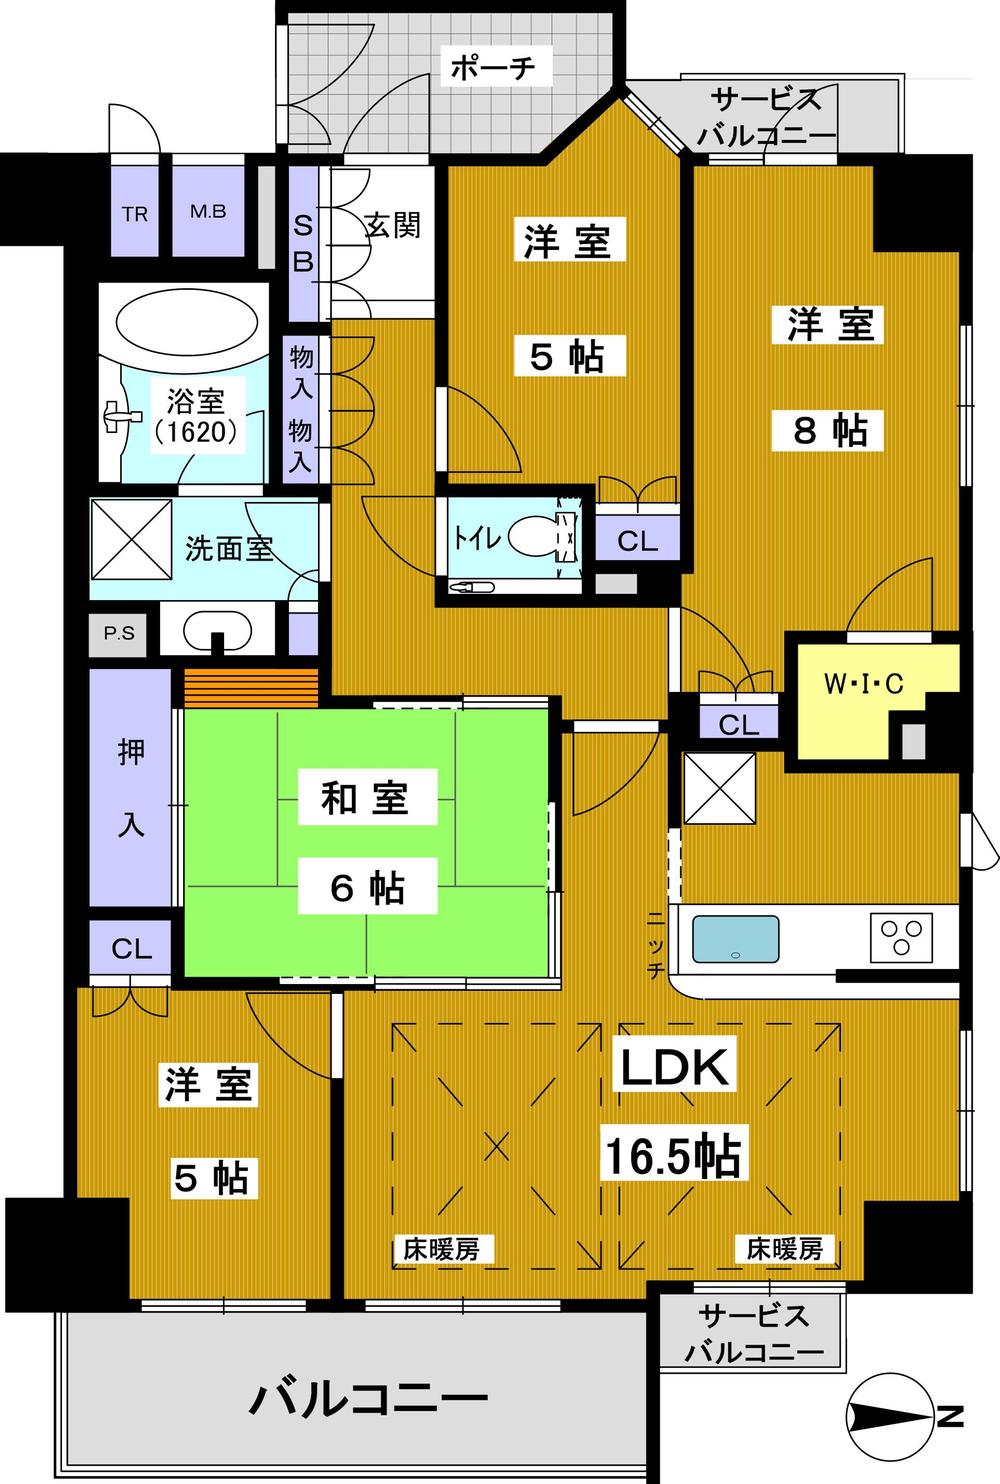 Floor plan. 4LDK, Price 72,800,000 yen, Occupied area 93.69 sq m , Balcony area 8.96 sq m 4LDK ・ Occupied area 93.69 sq m